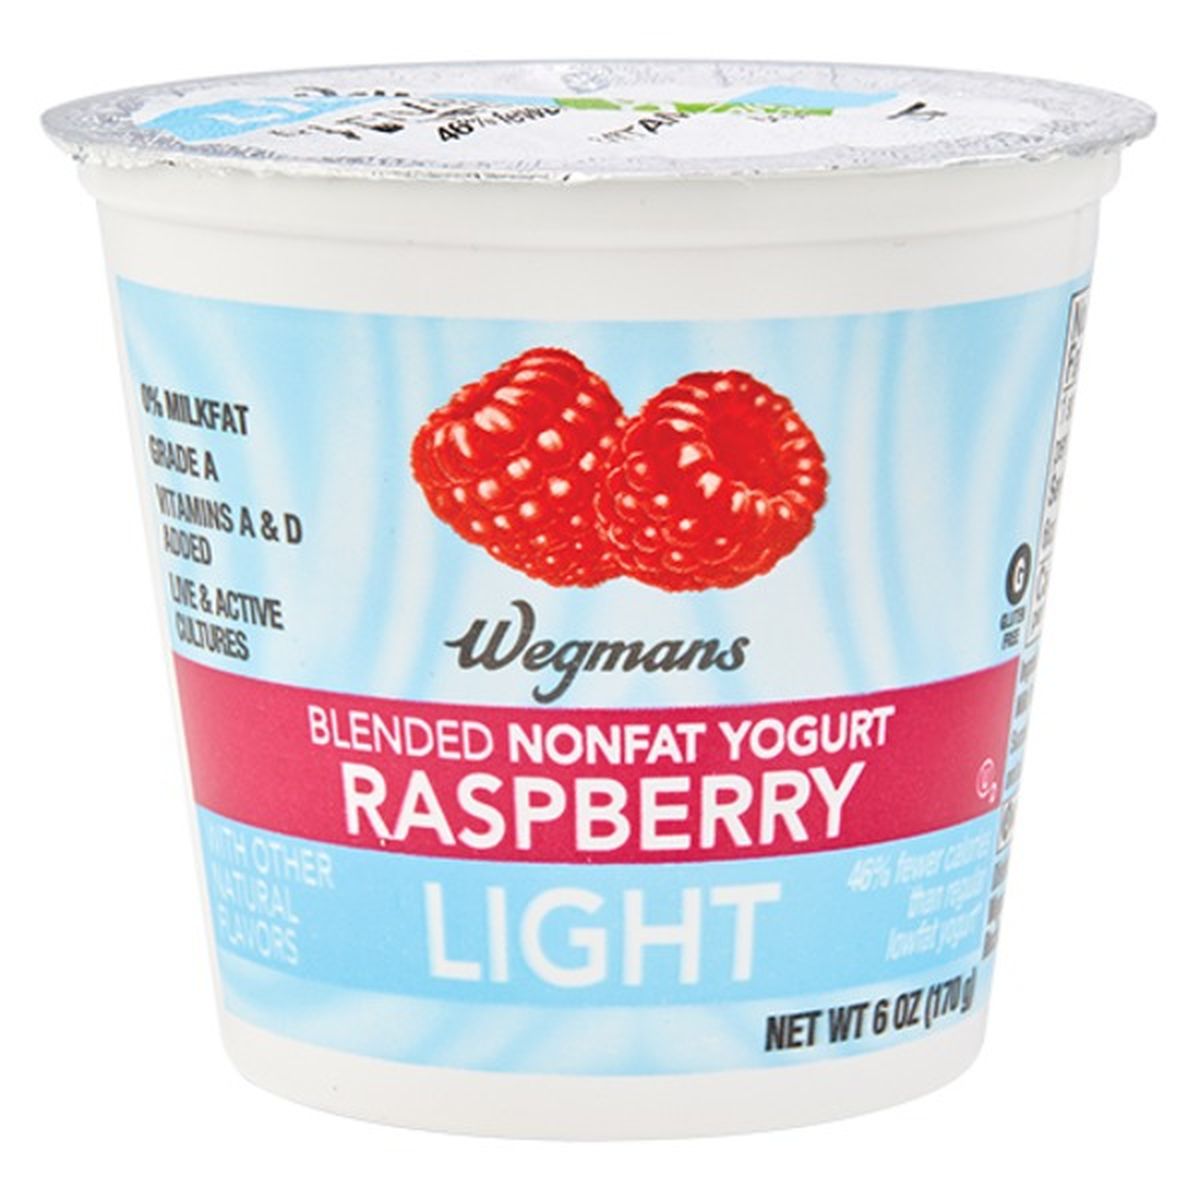 Calories in Wegmans Light Blended Raspberry Nonfat Yogurt